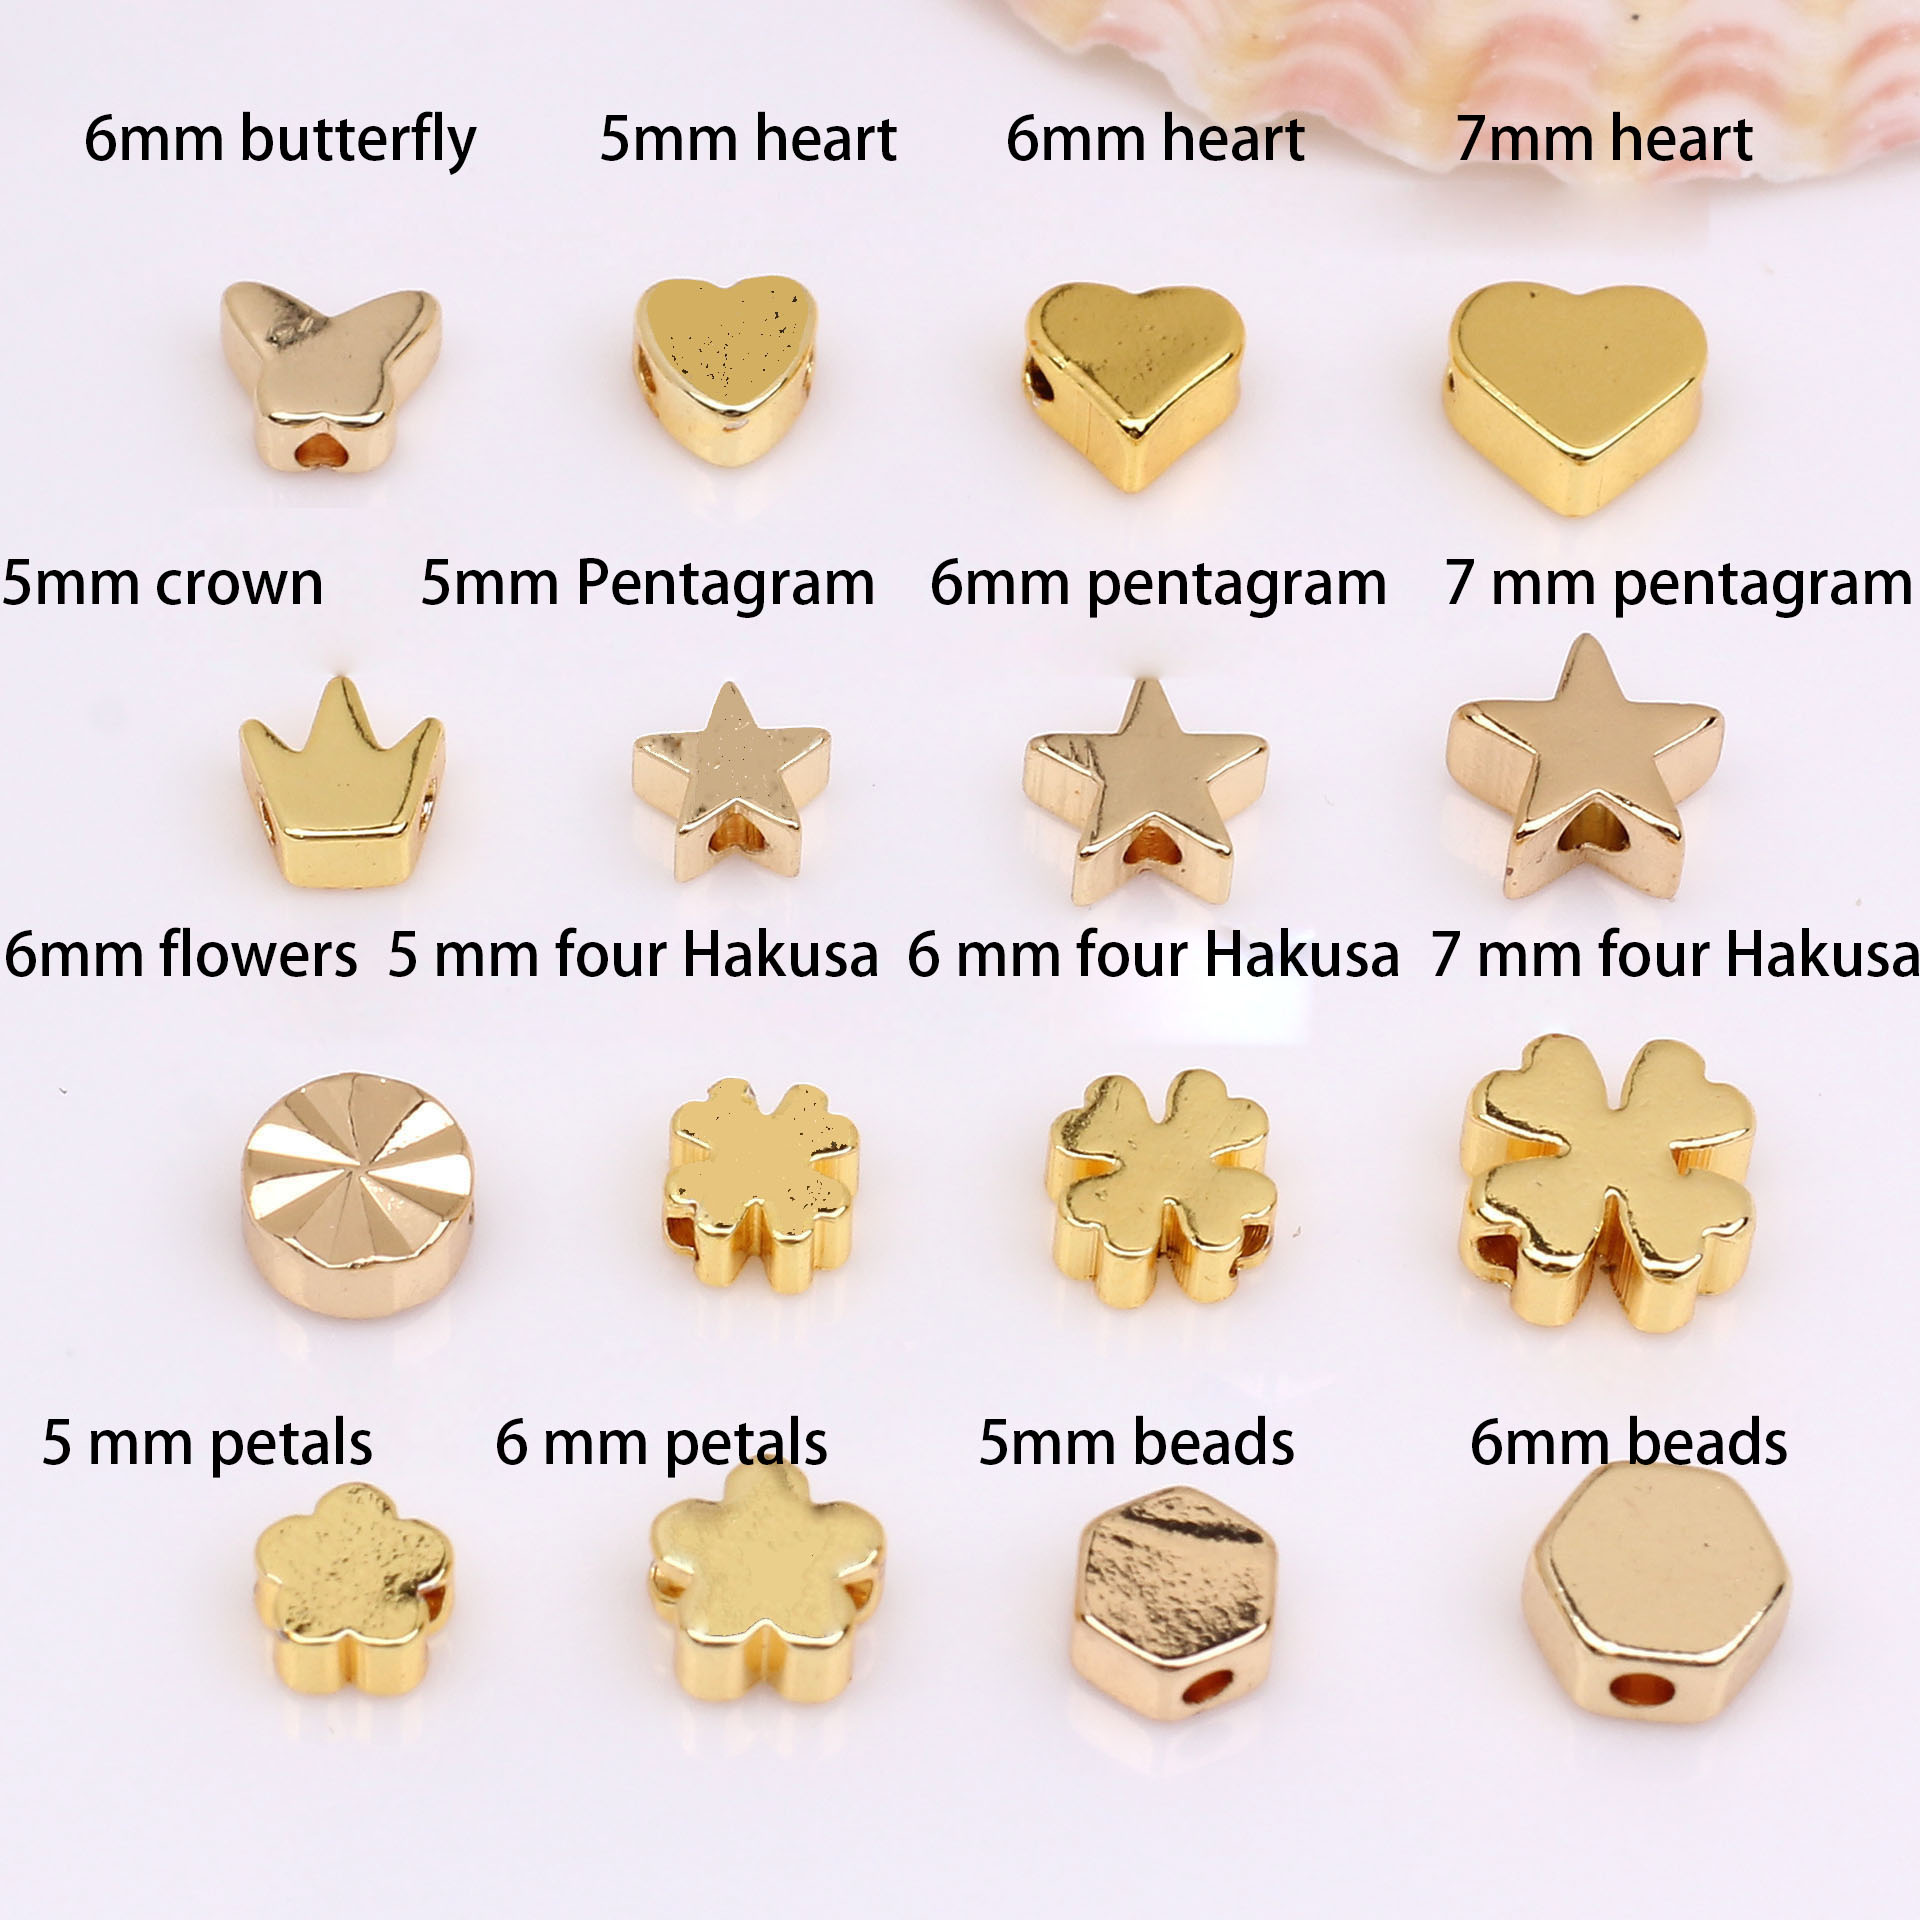 14-carat gold, color retention 6 mm four Hakusa